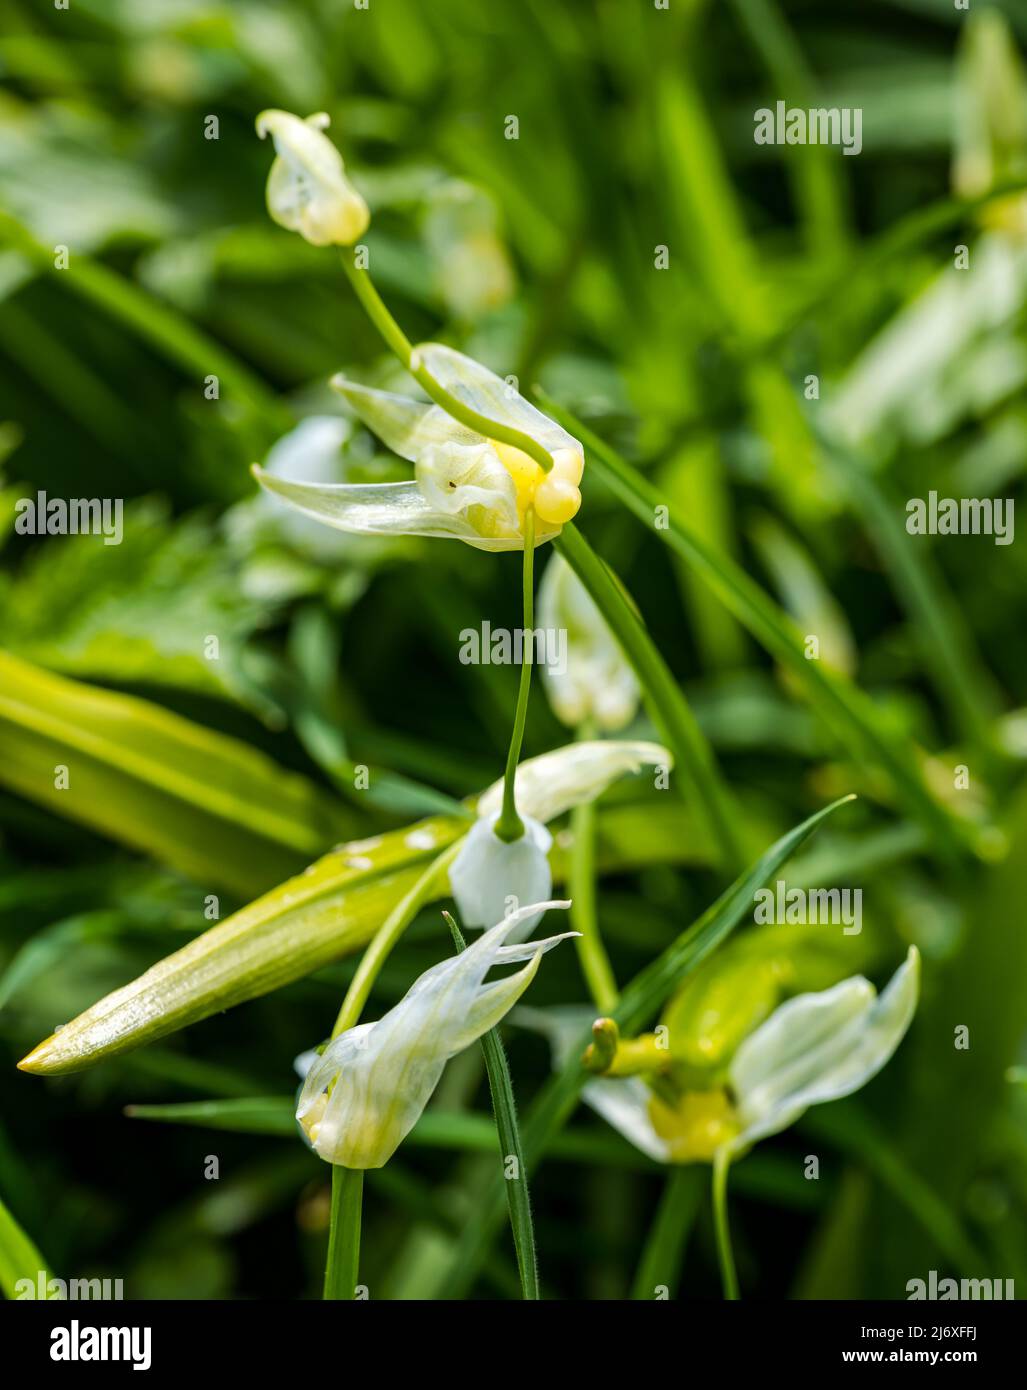 Nahaufnahme von Wildleeks, Rampen oder Ransons (Allium tricoccum), die zum Kochen gezüchtet werden können, Schottland, Großbritannien Stockfoto